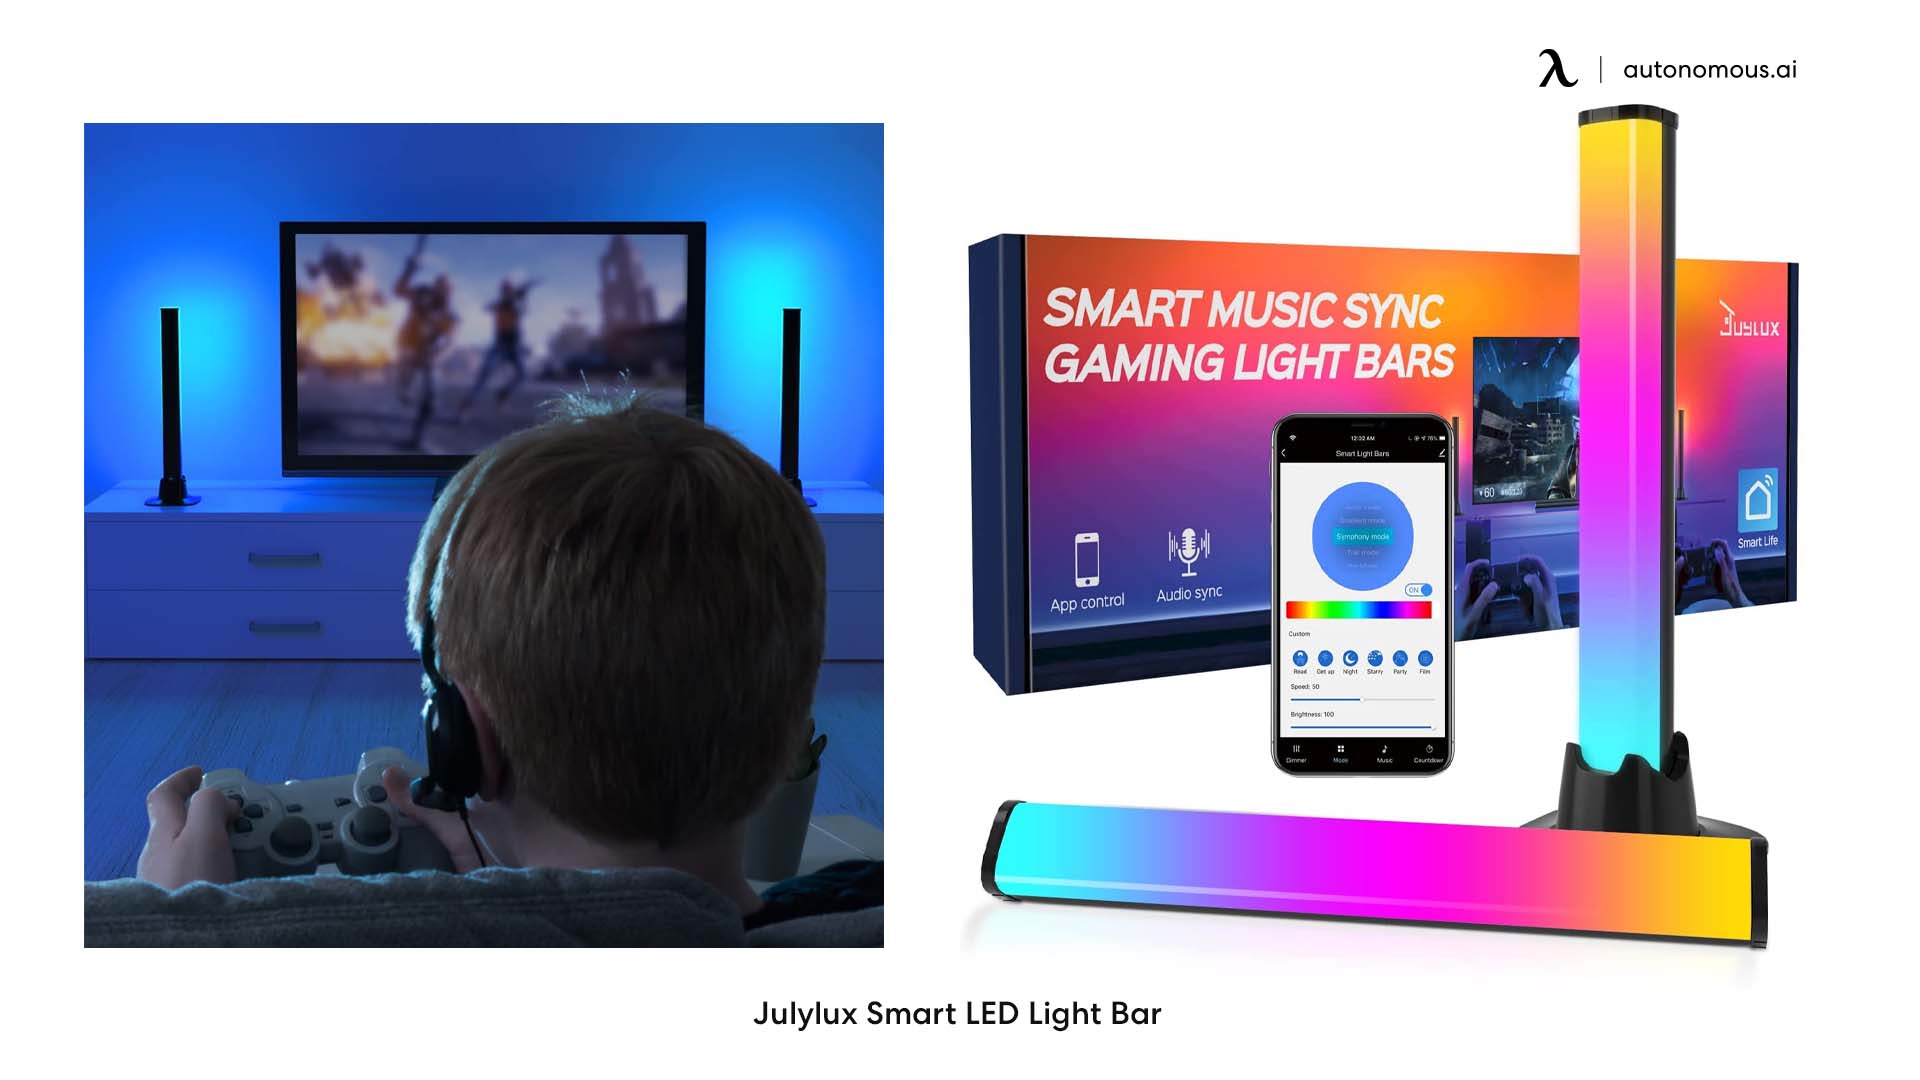 Julylux Smart LED Light Bar gaming lights